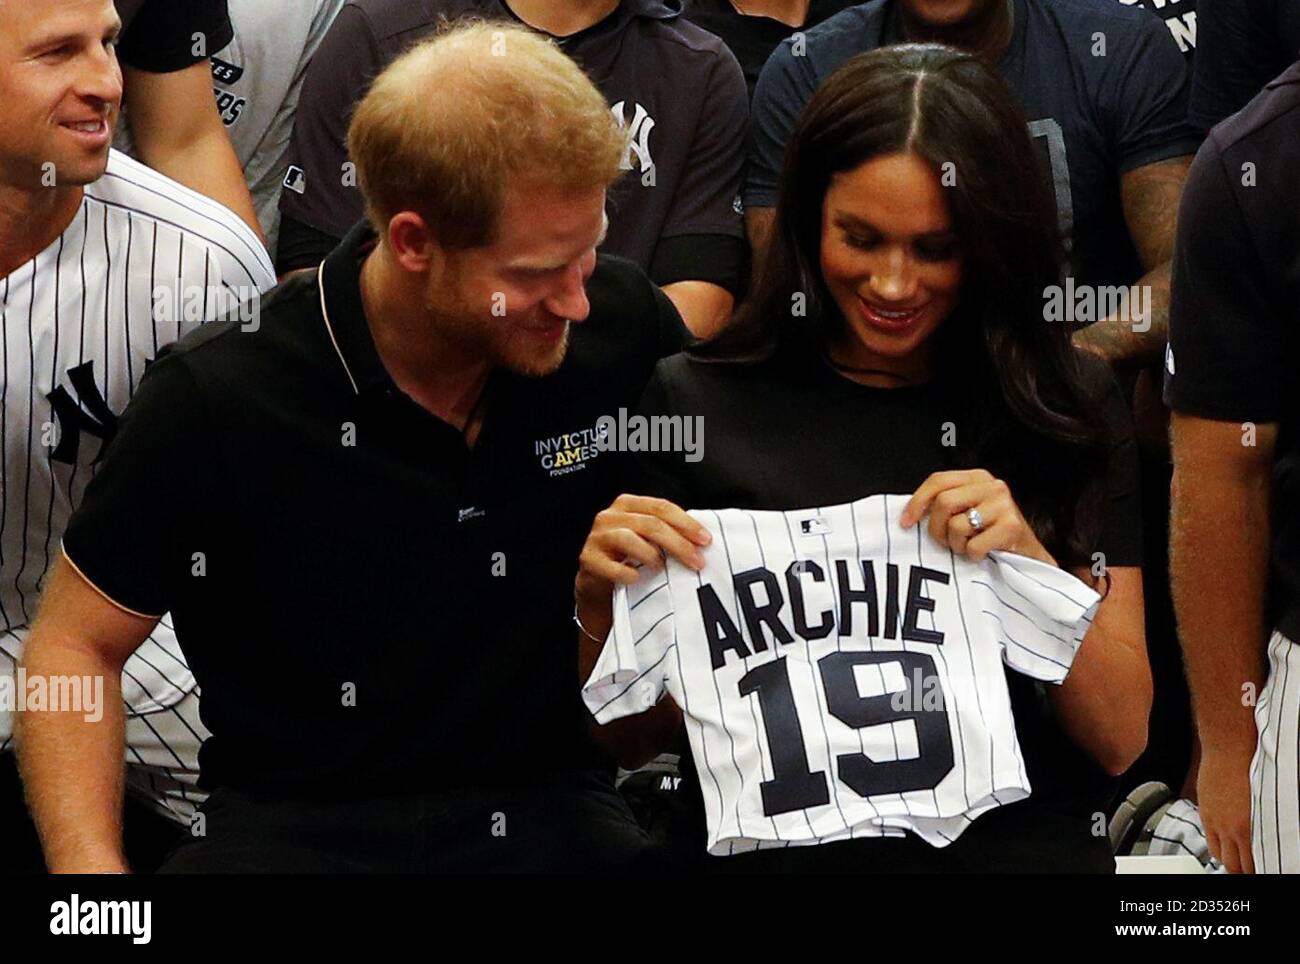 Le duc et la duchesse de Kent recevoir des présents pour leur fils Archie comme ils rencontrer des acteurs de la Nouvelle York Yankee comme ils fréquentent les Red Sox de Boston vs Yankees de New York d'un match de baseball au stade de Londres à l'appui de l'Invictus Games Foundation. Banque D'Images